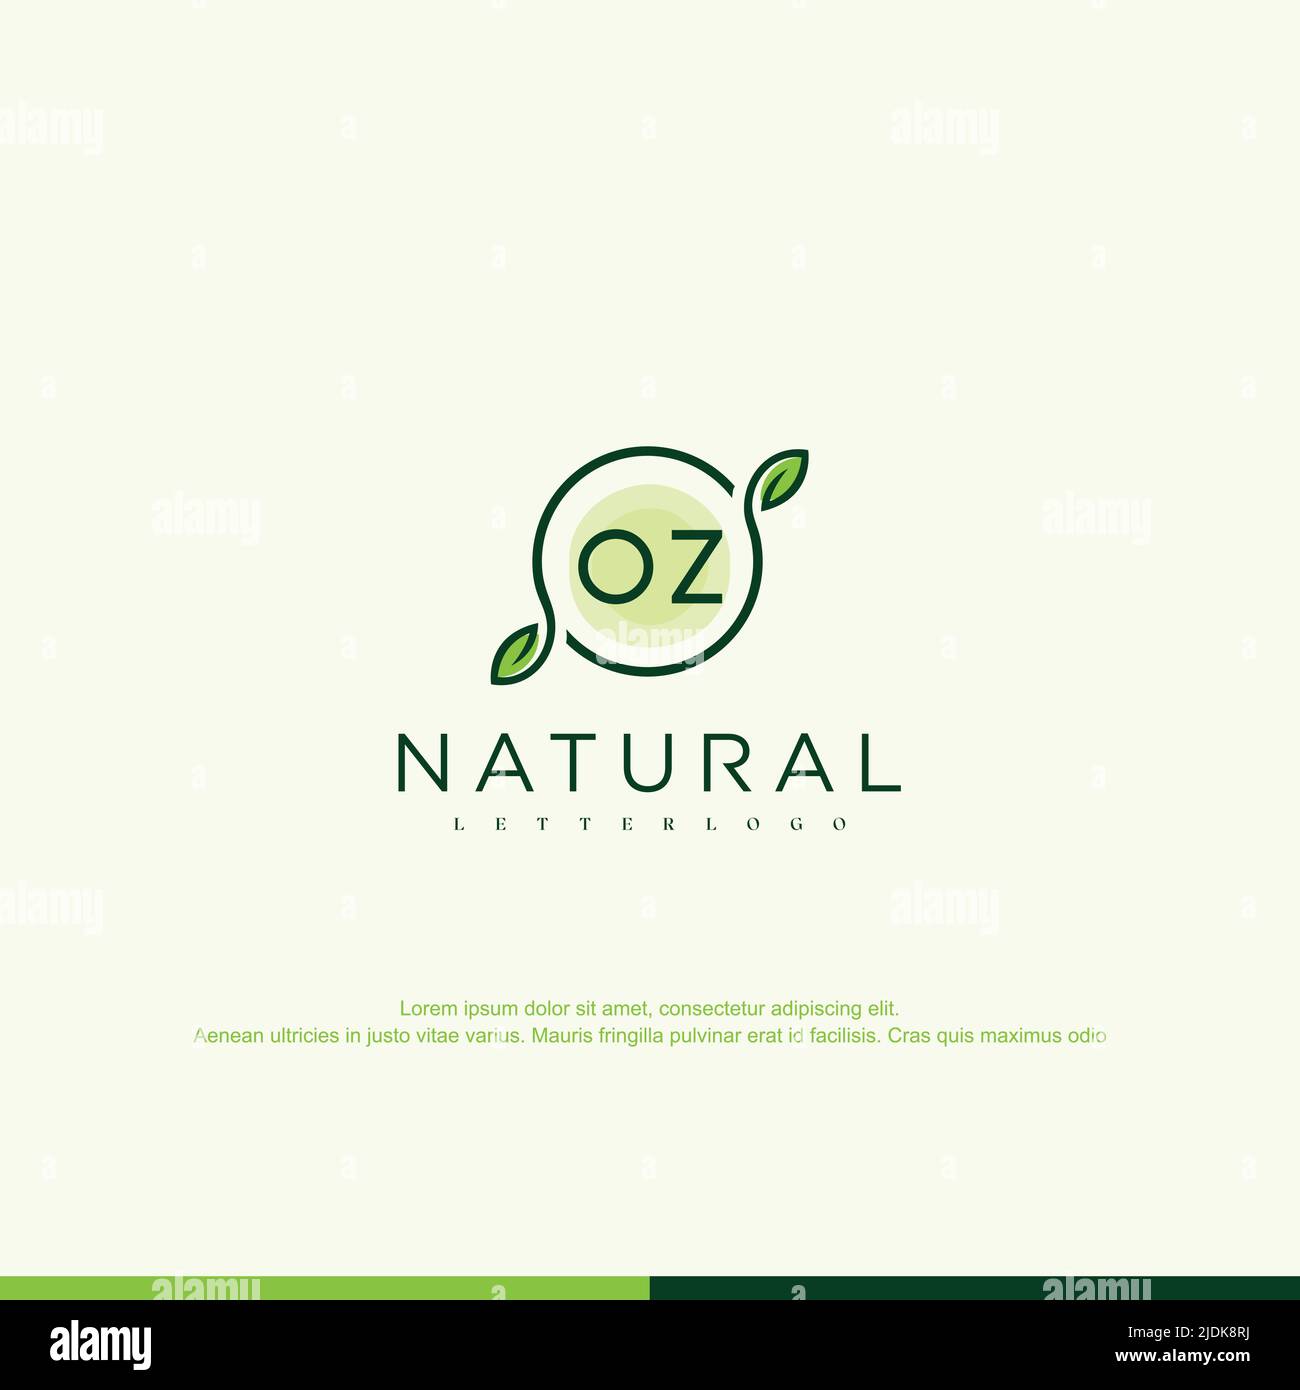 OZ Initial natural logo template vector Stock Vector